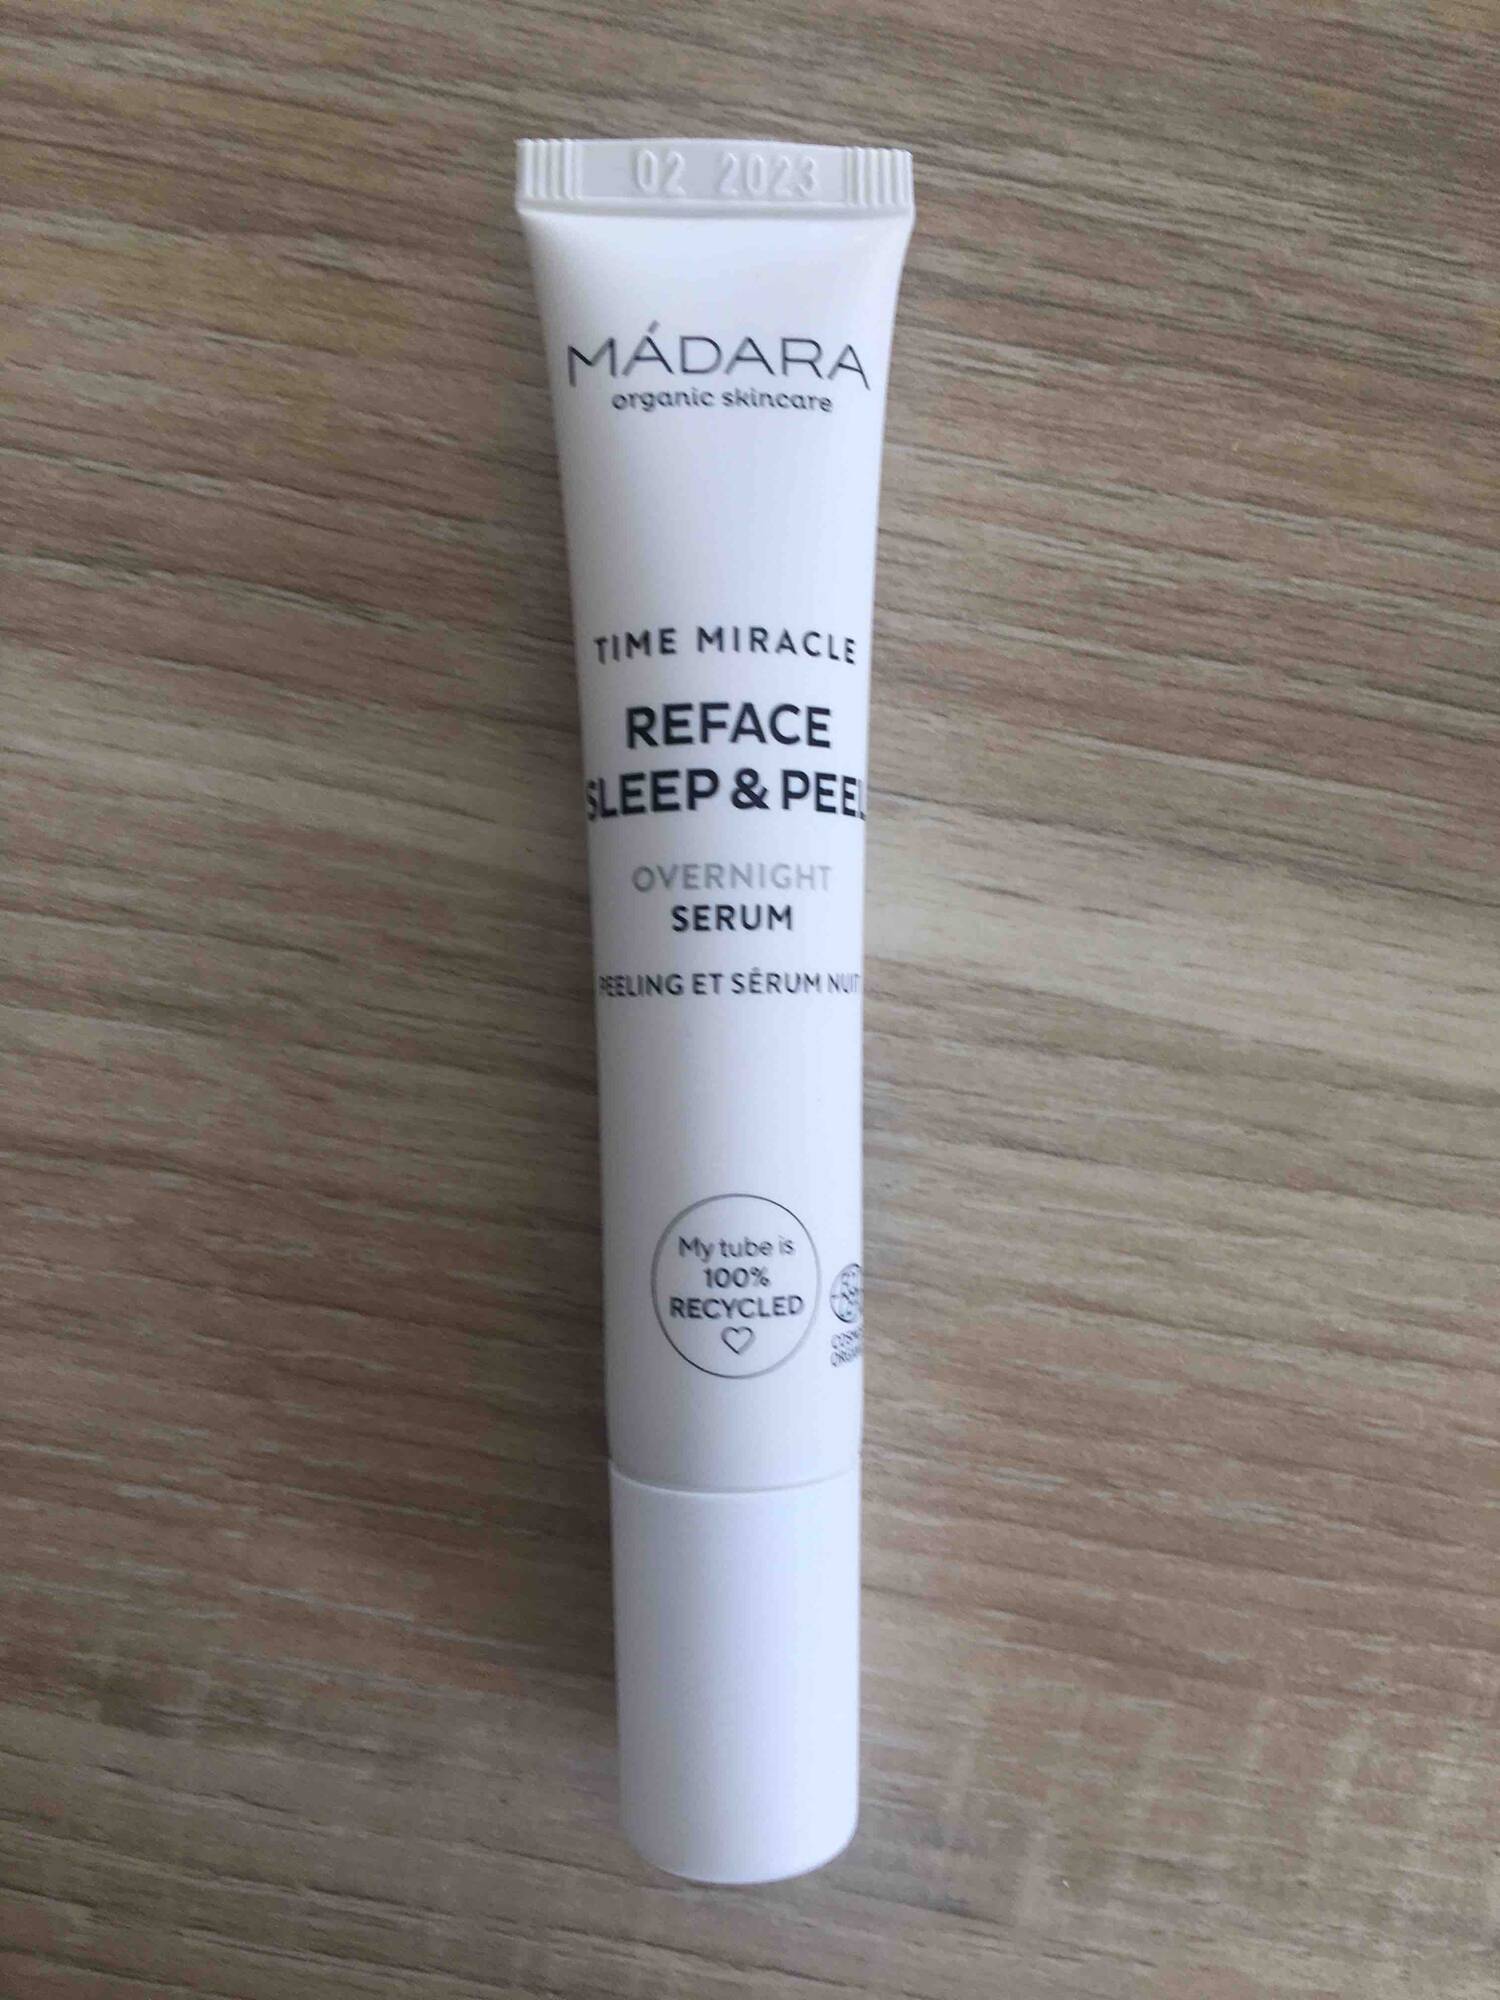 MÁDARA - Reface sleep & peel - Overnight serum